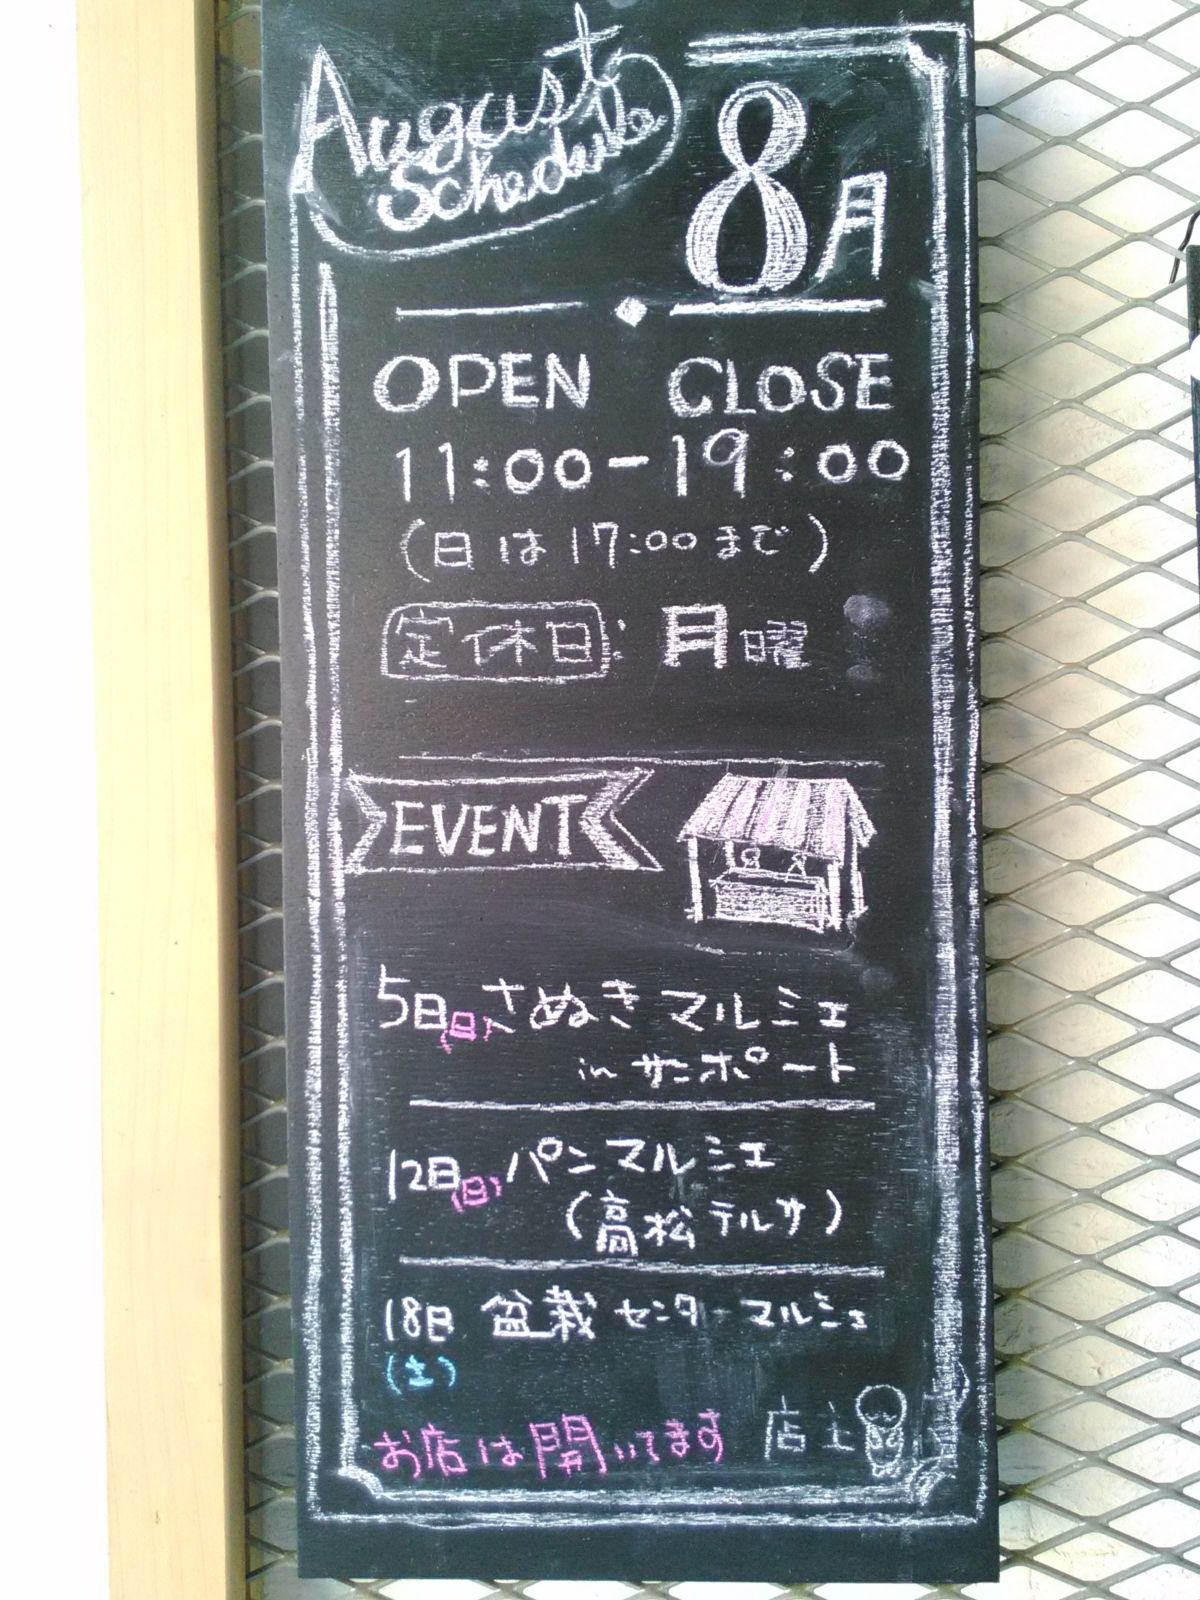 瀬戸内ラスク堂 8月のイベントスケジュール 店用看板